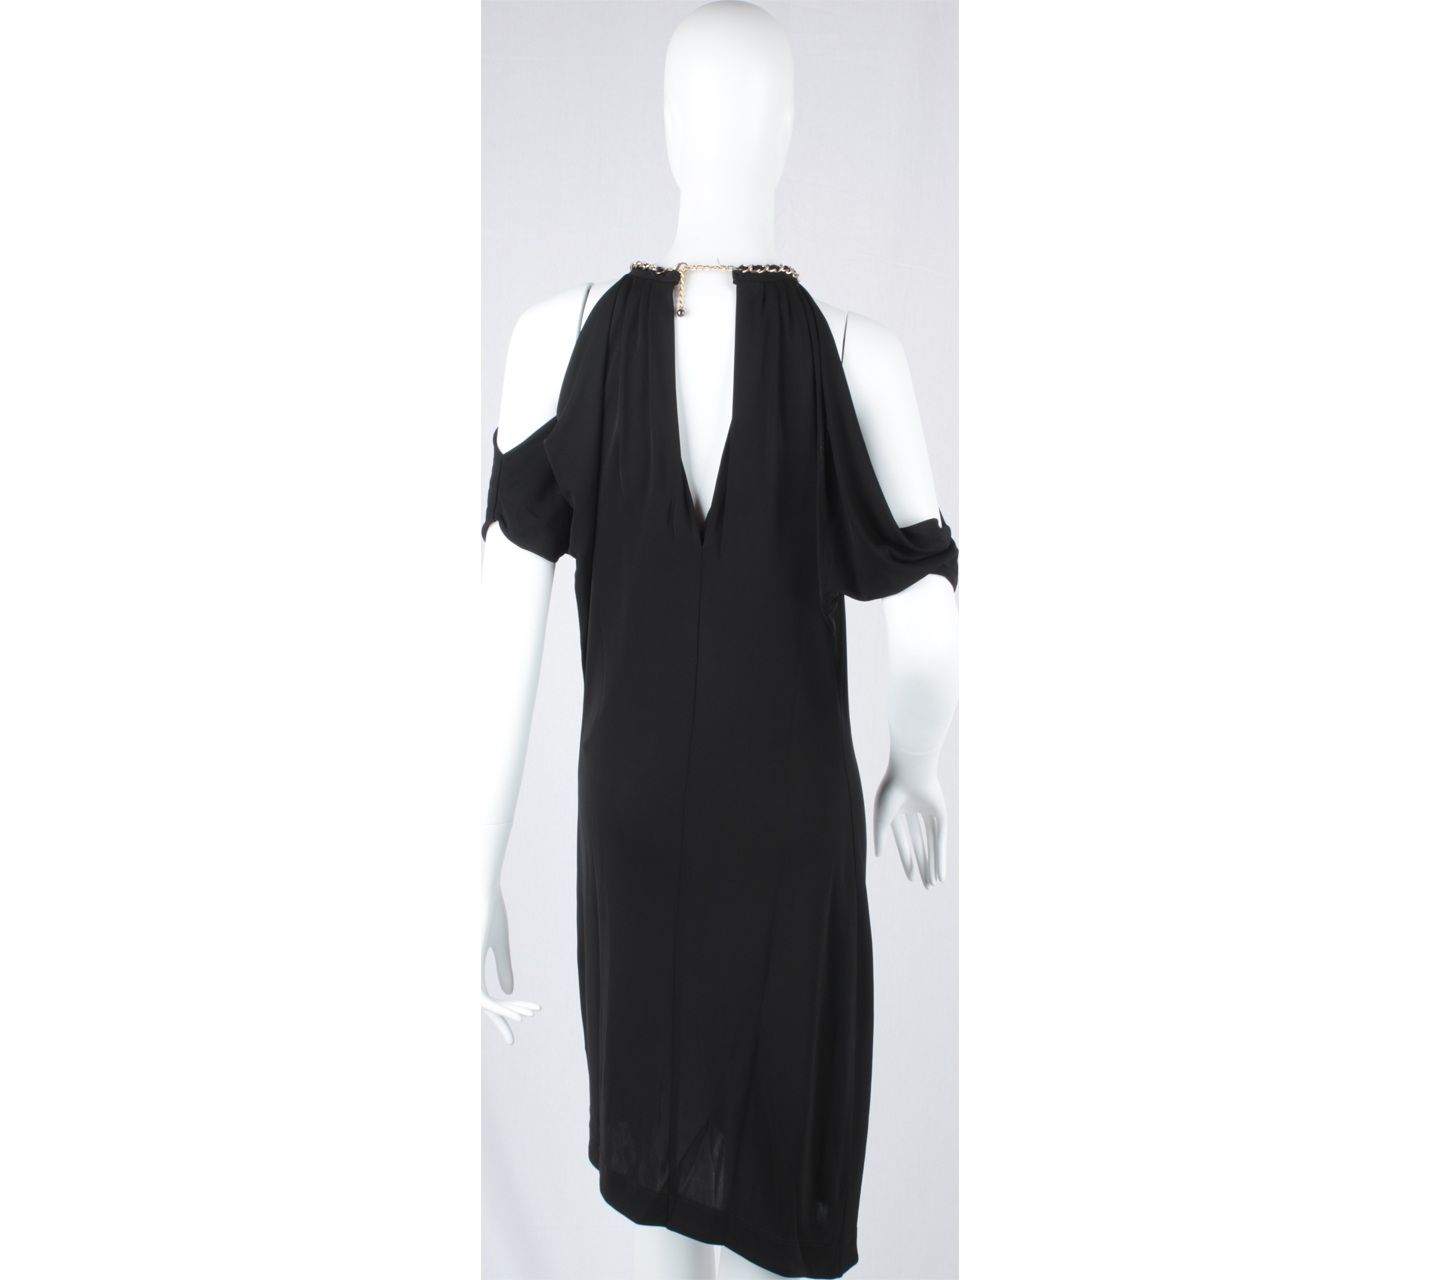 Bebe Black Off Shoulder Midi Dress